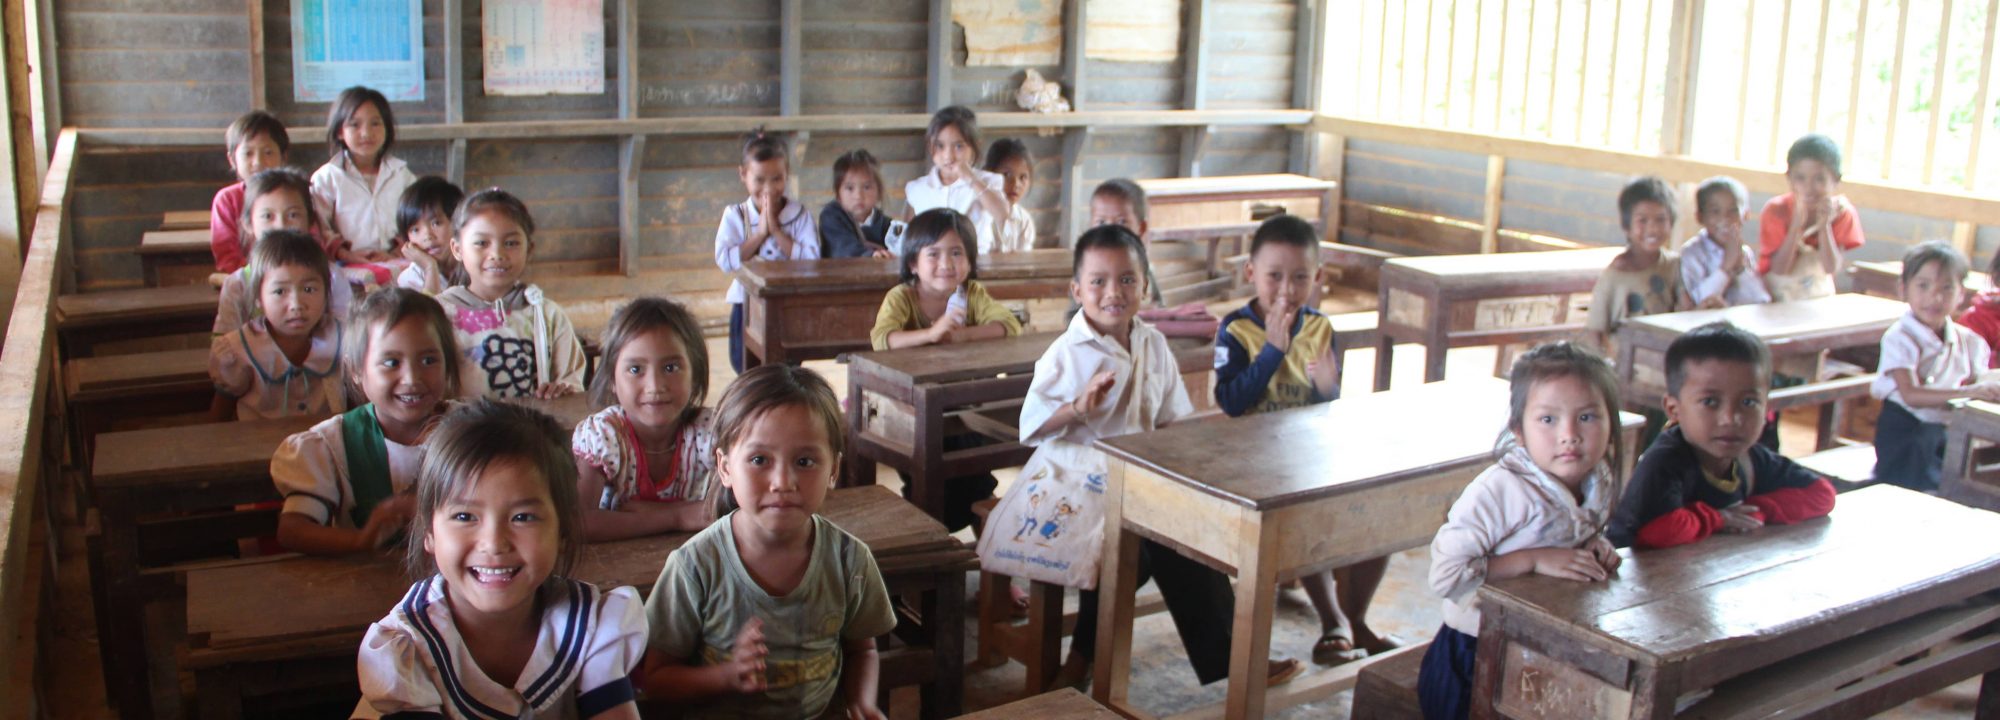 Parrainage - Enfants d'Asie